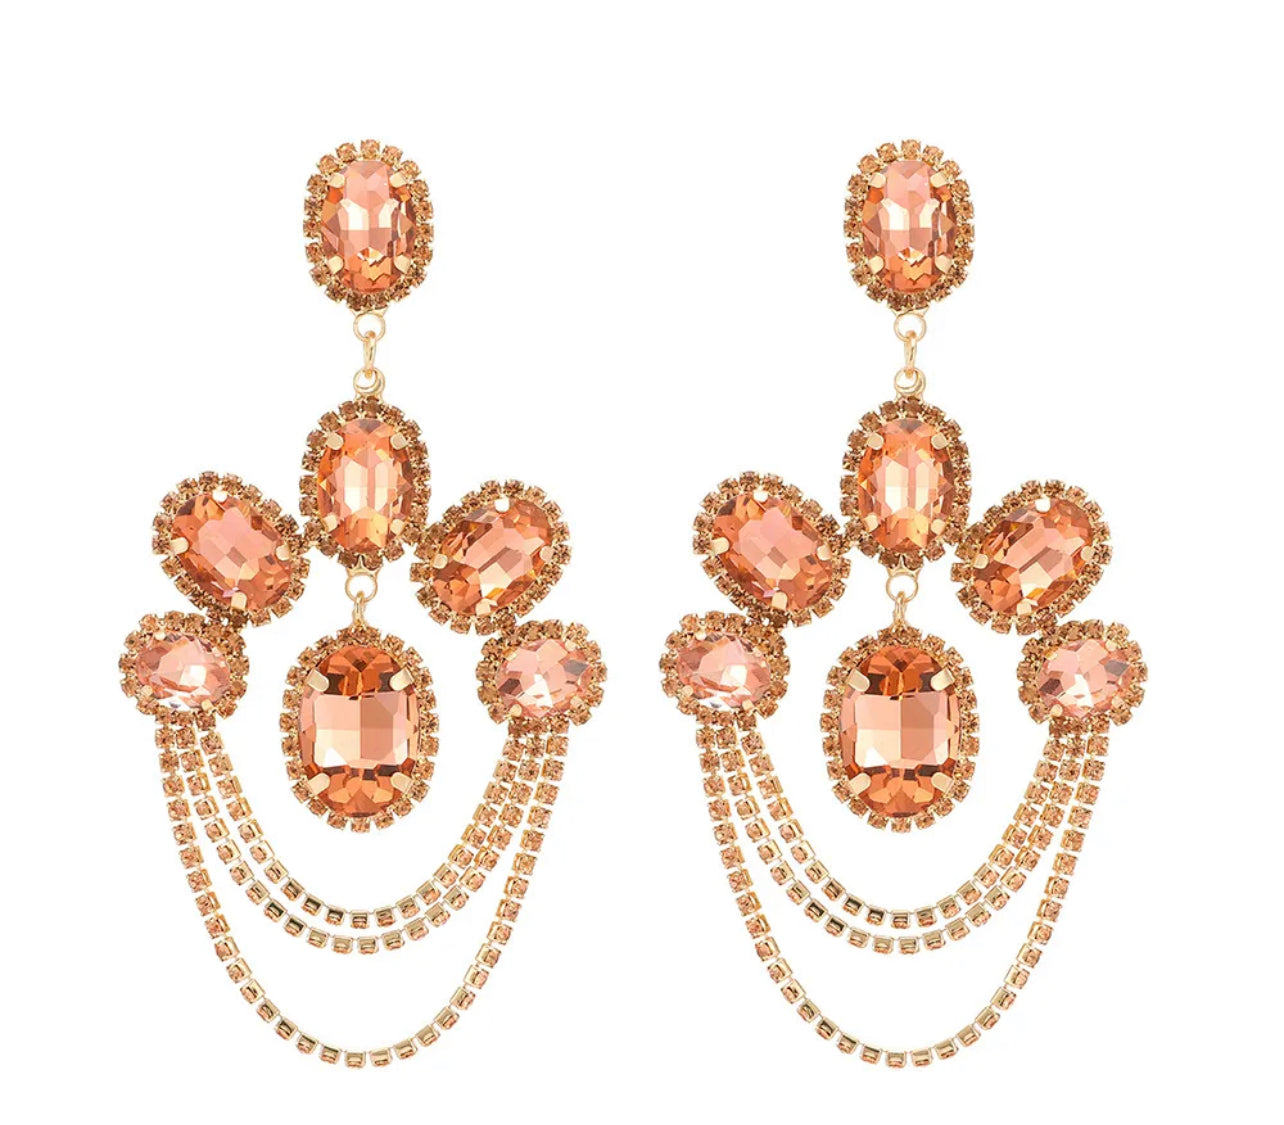 Elegant Diamante Rhinestone Sparkle Tassels Stud Statement Earrings